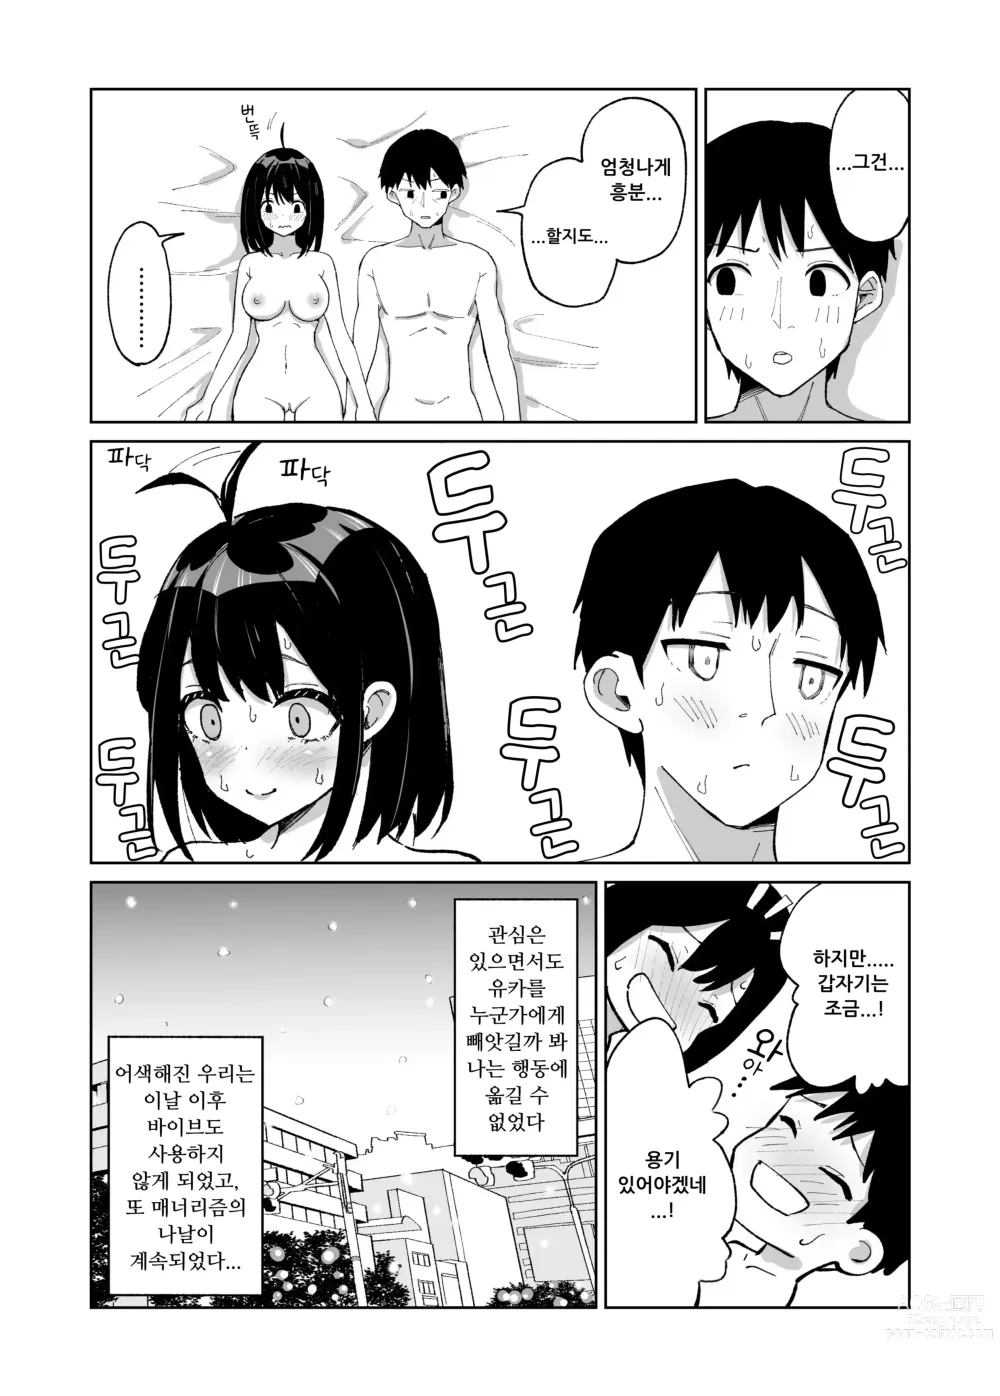 Page 10 of doujinshi 소꿉친구인 그녀에게 받은 X'mas 선물은 네토라레 였습니다